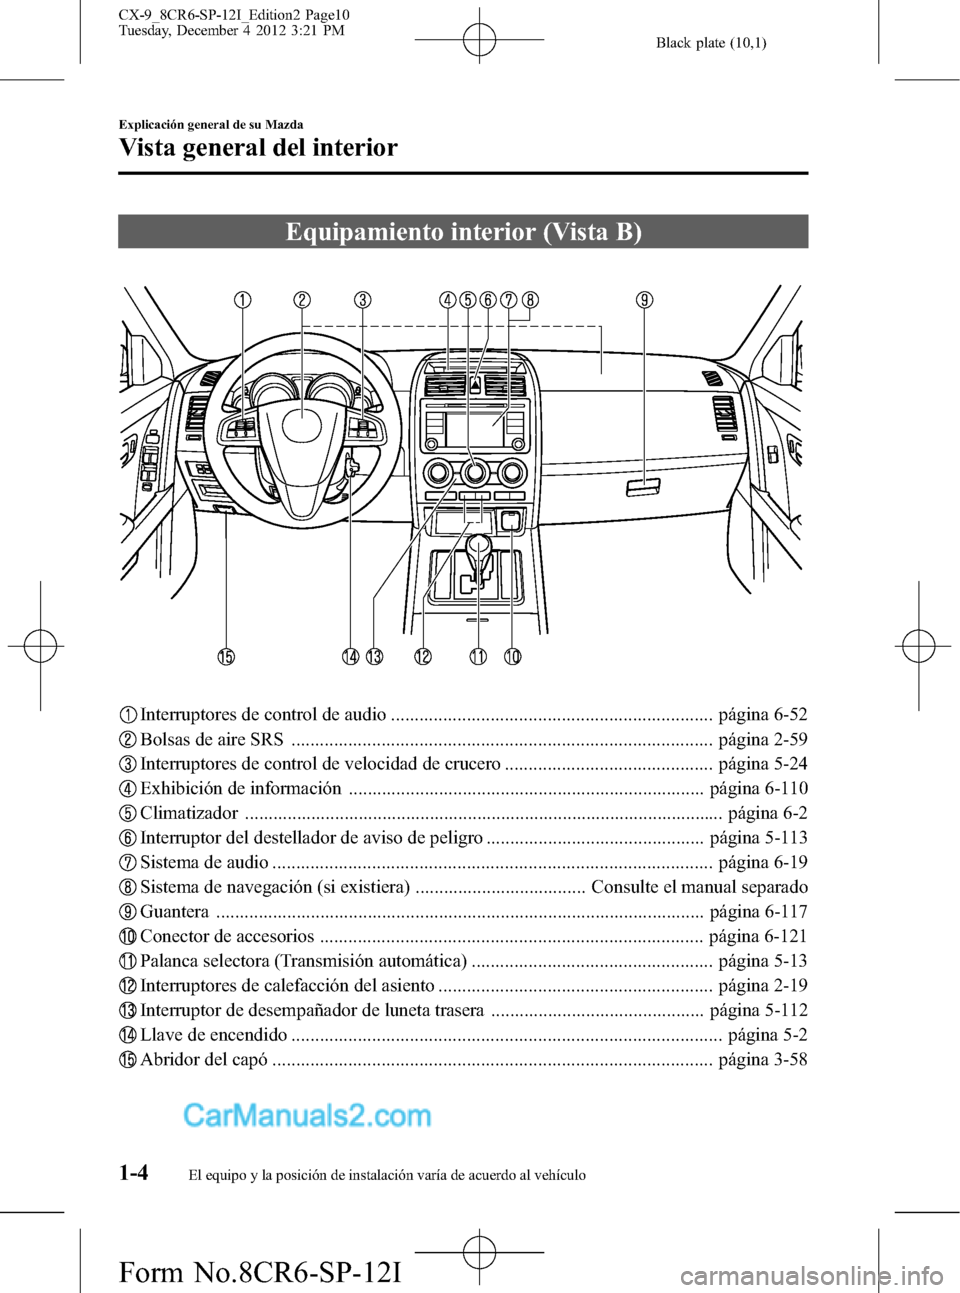 MAZDA MODEL CX-9 2016  Manual del propietario (in Spanish)  Black plate (10,1)
Equipamiento interior (Vista B)
Interruptores de control de audio .................................................................... página 6-52
Bolsas de aire SRS ..............